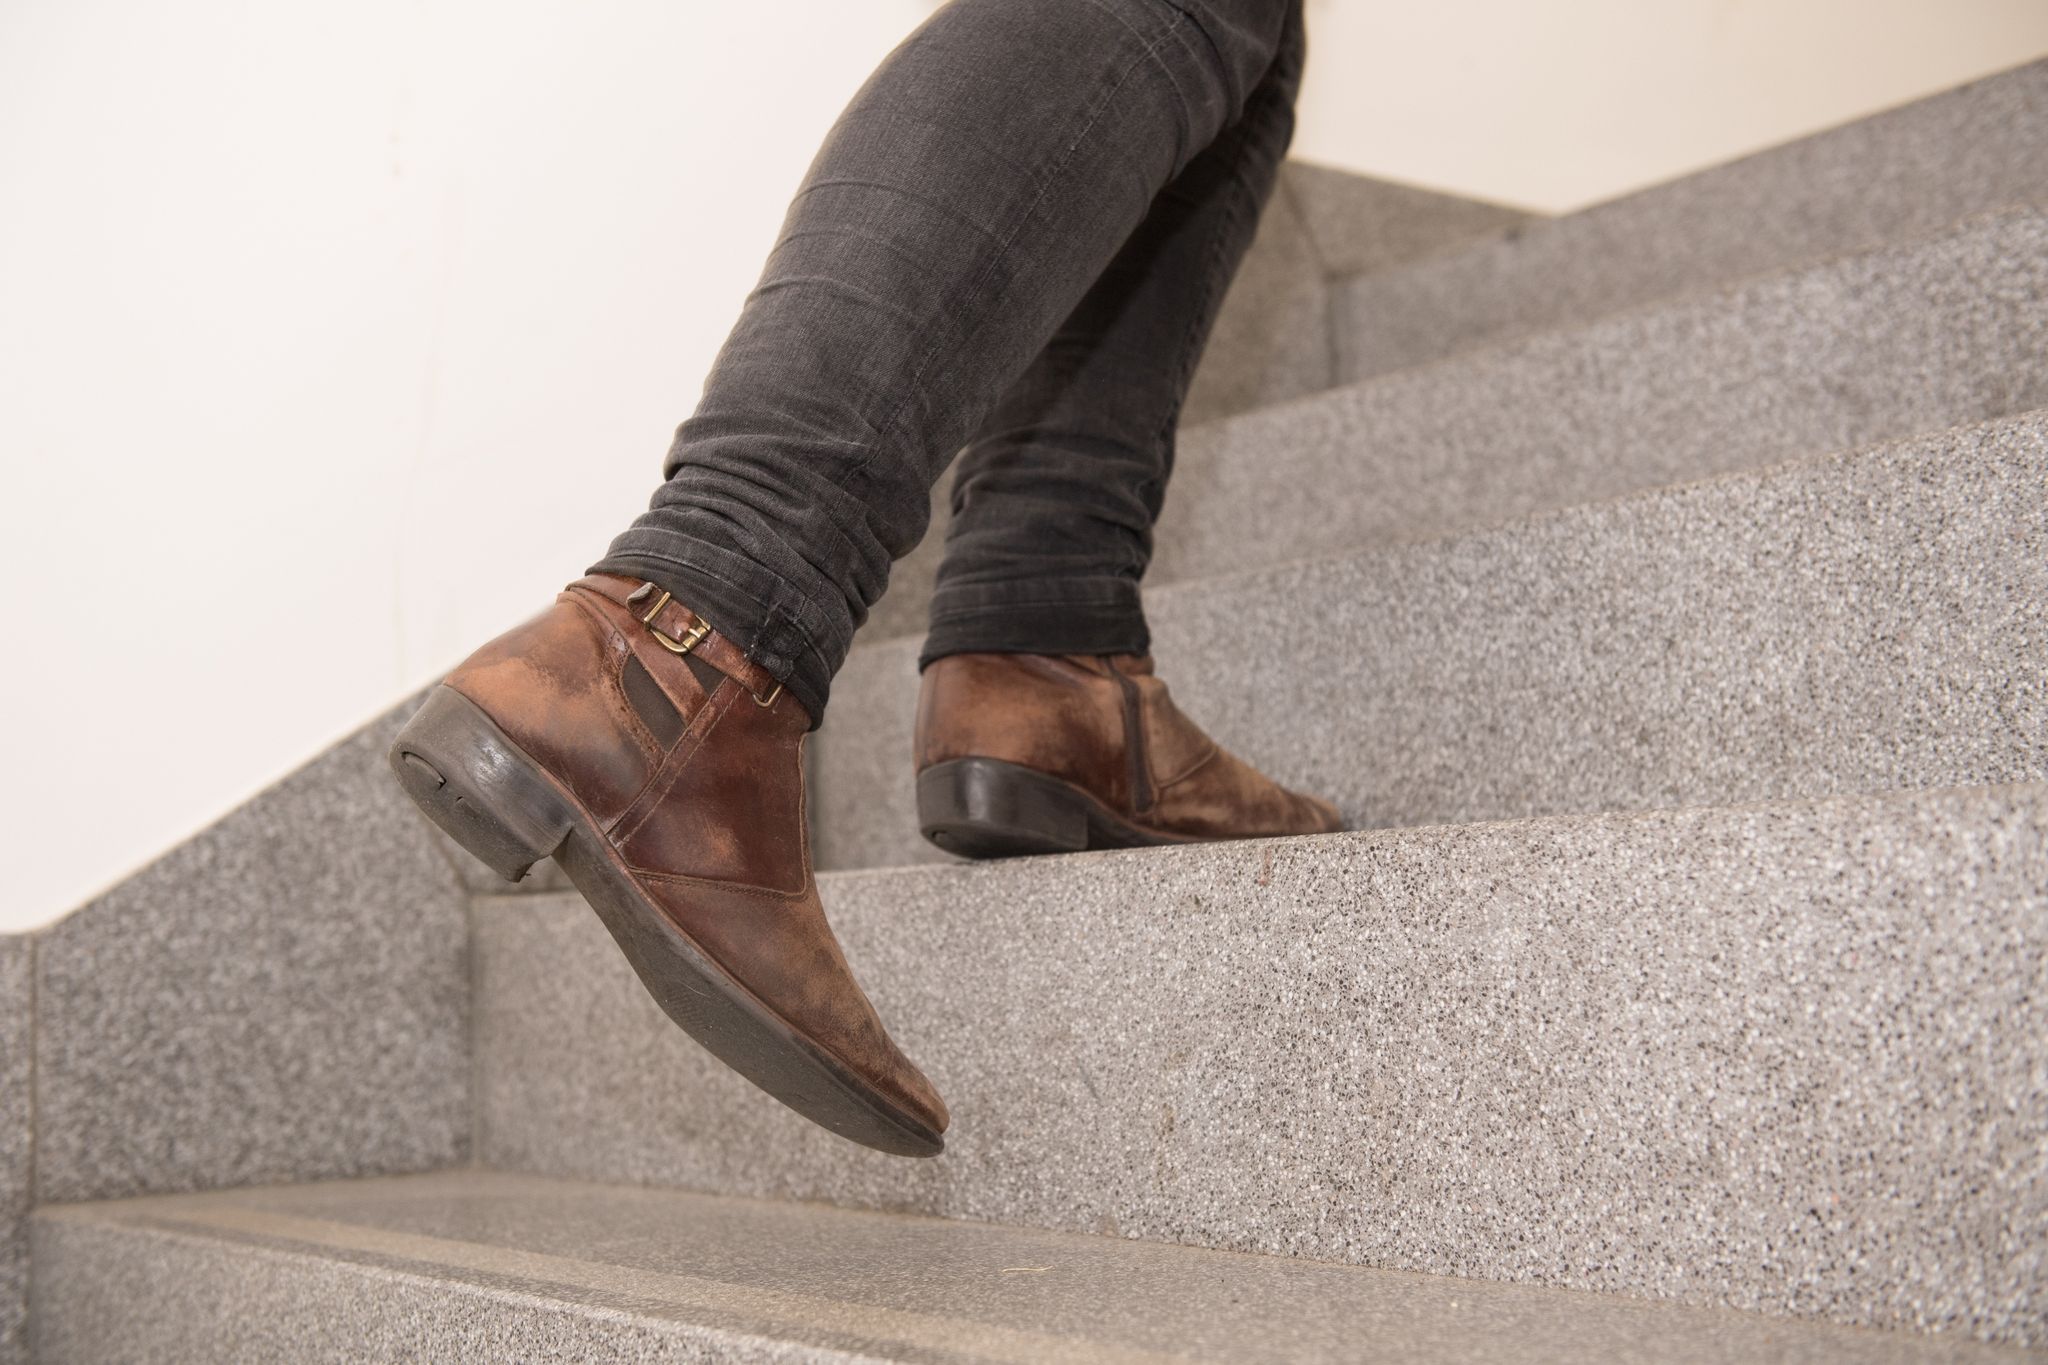 Wenn beim Treppensteigen regelmäßig die Beine schmerzen, kann das ein Anzeichen für eine Durchblutungsstörung sein.